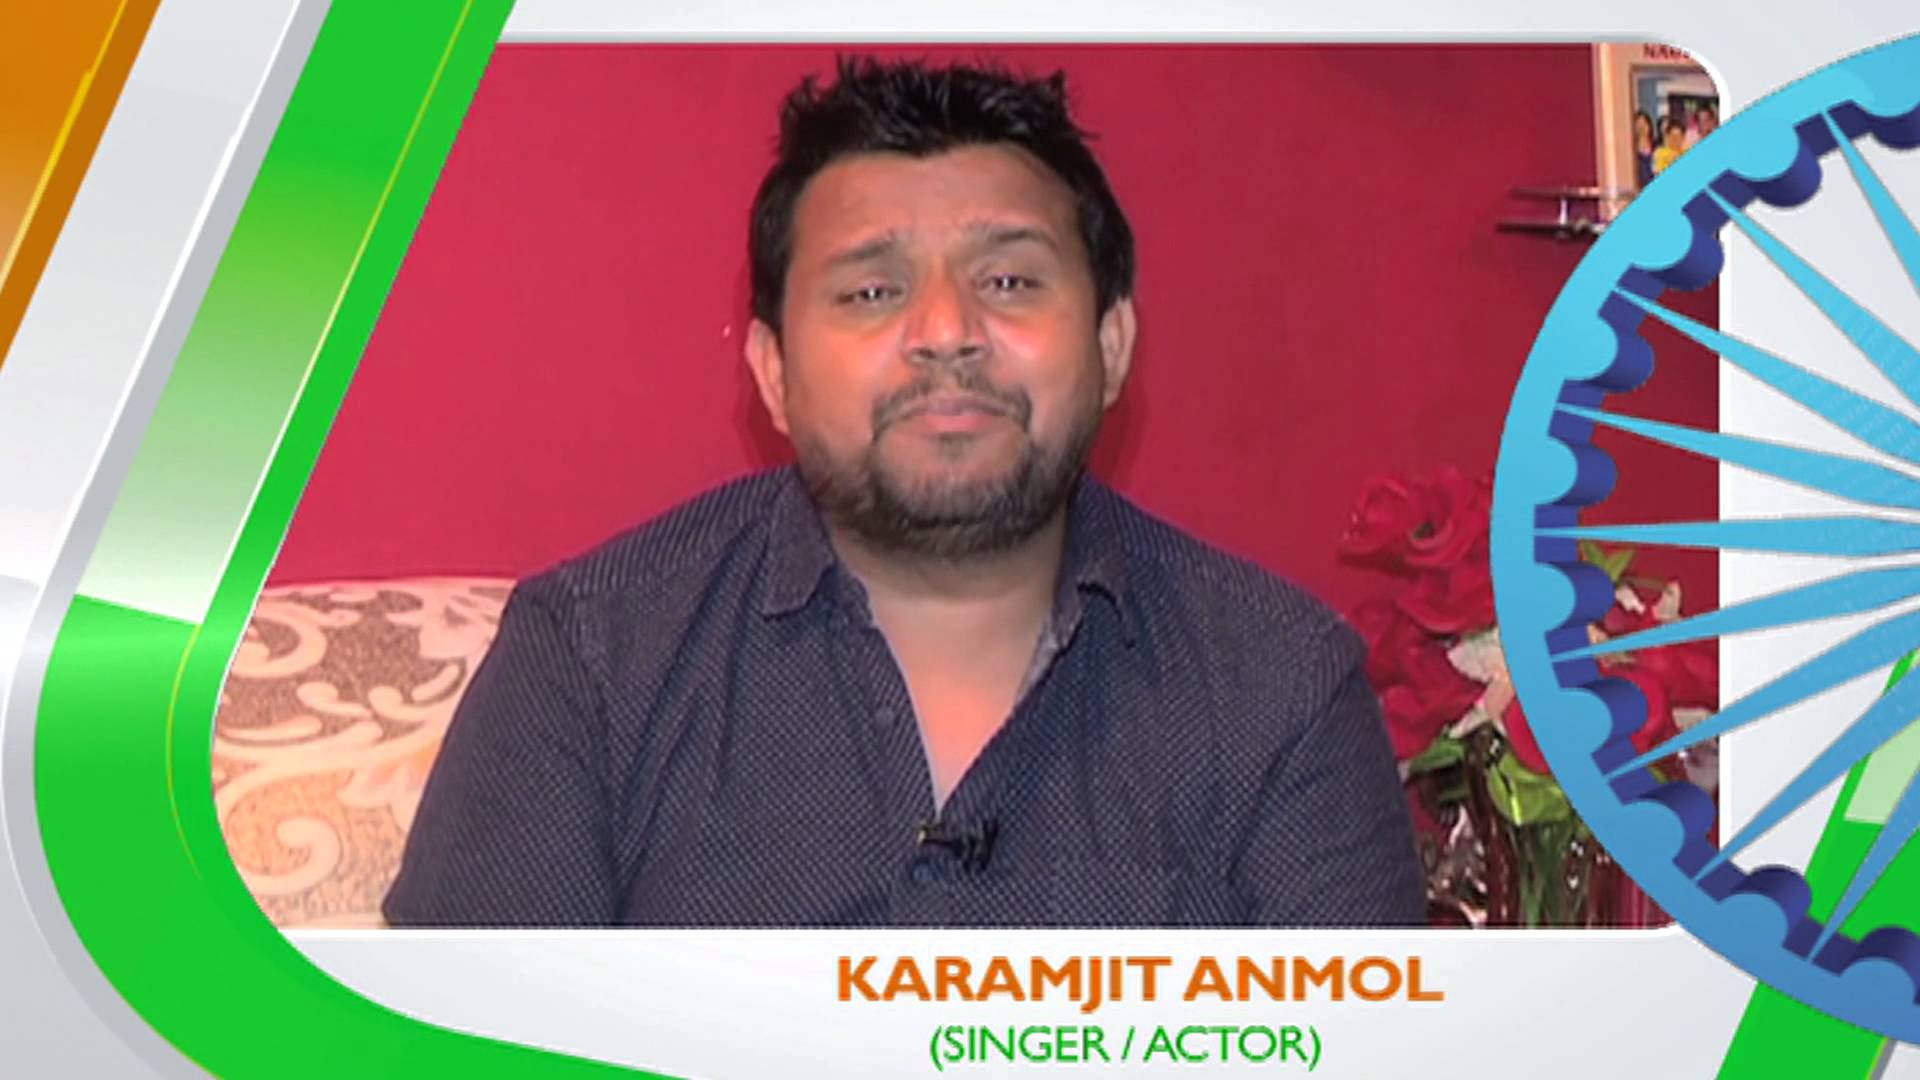 Singer Karamjit Anmol